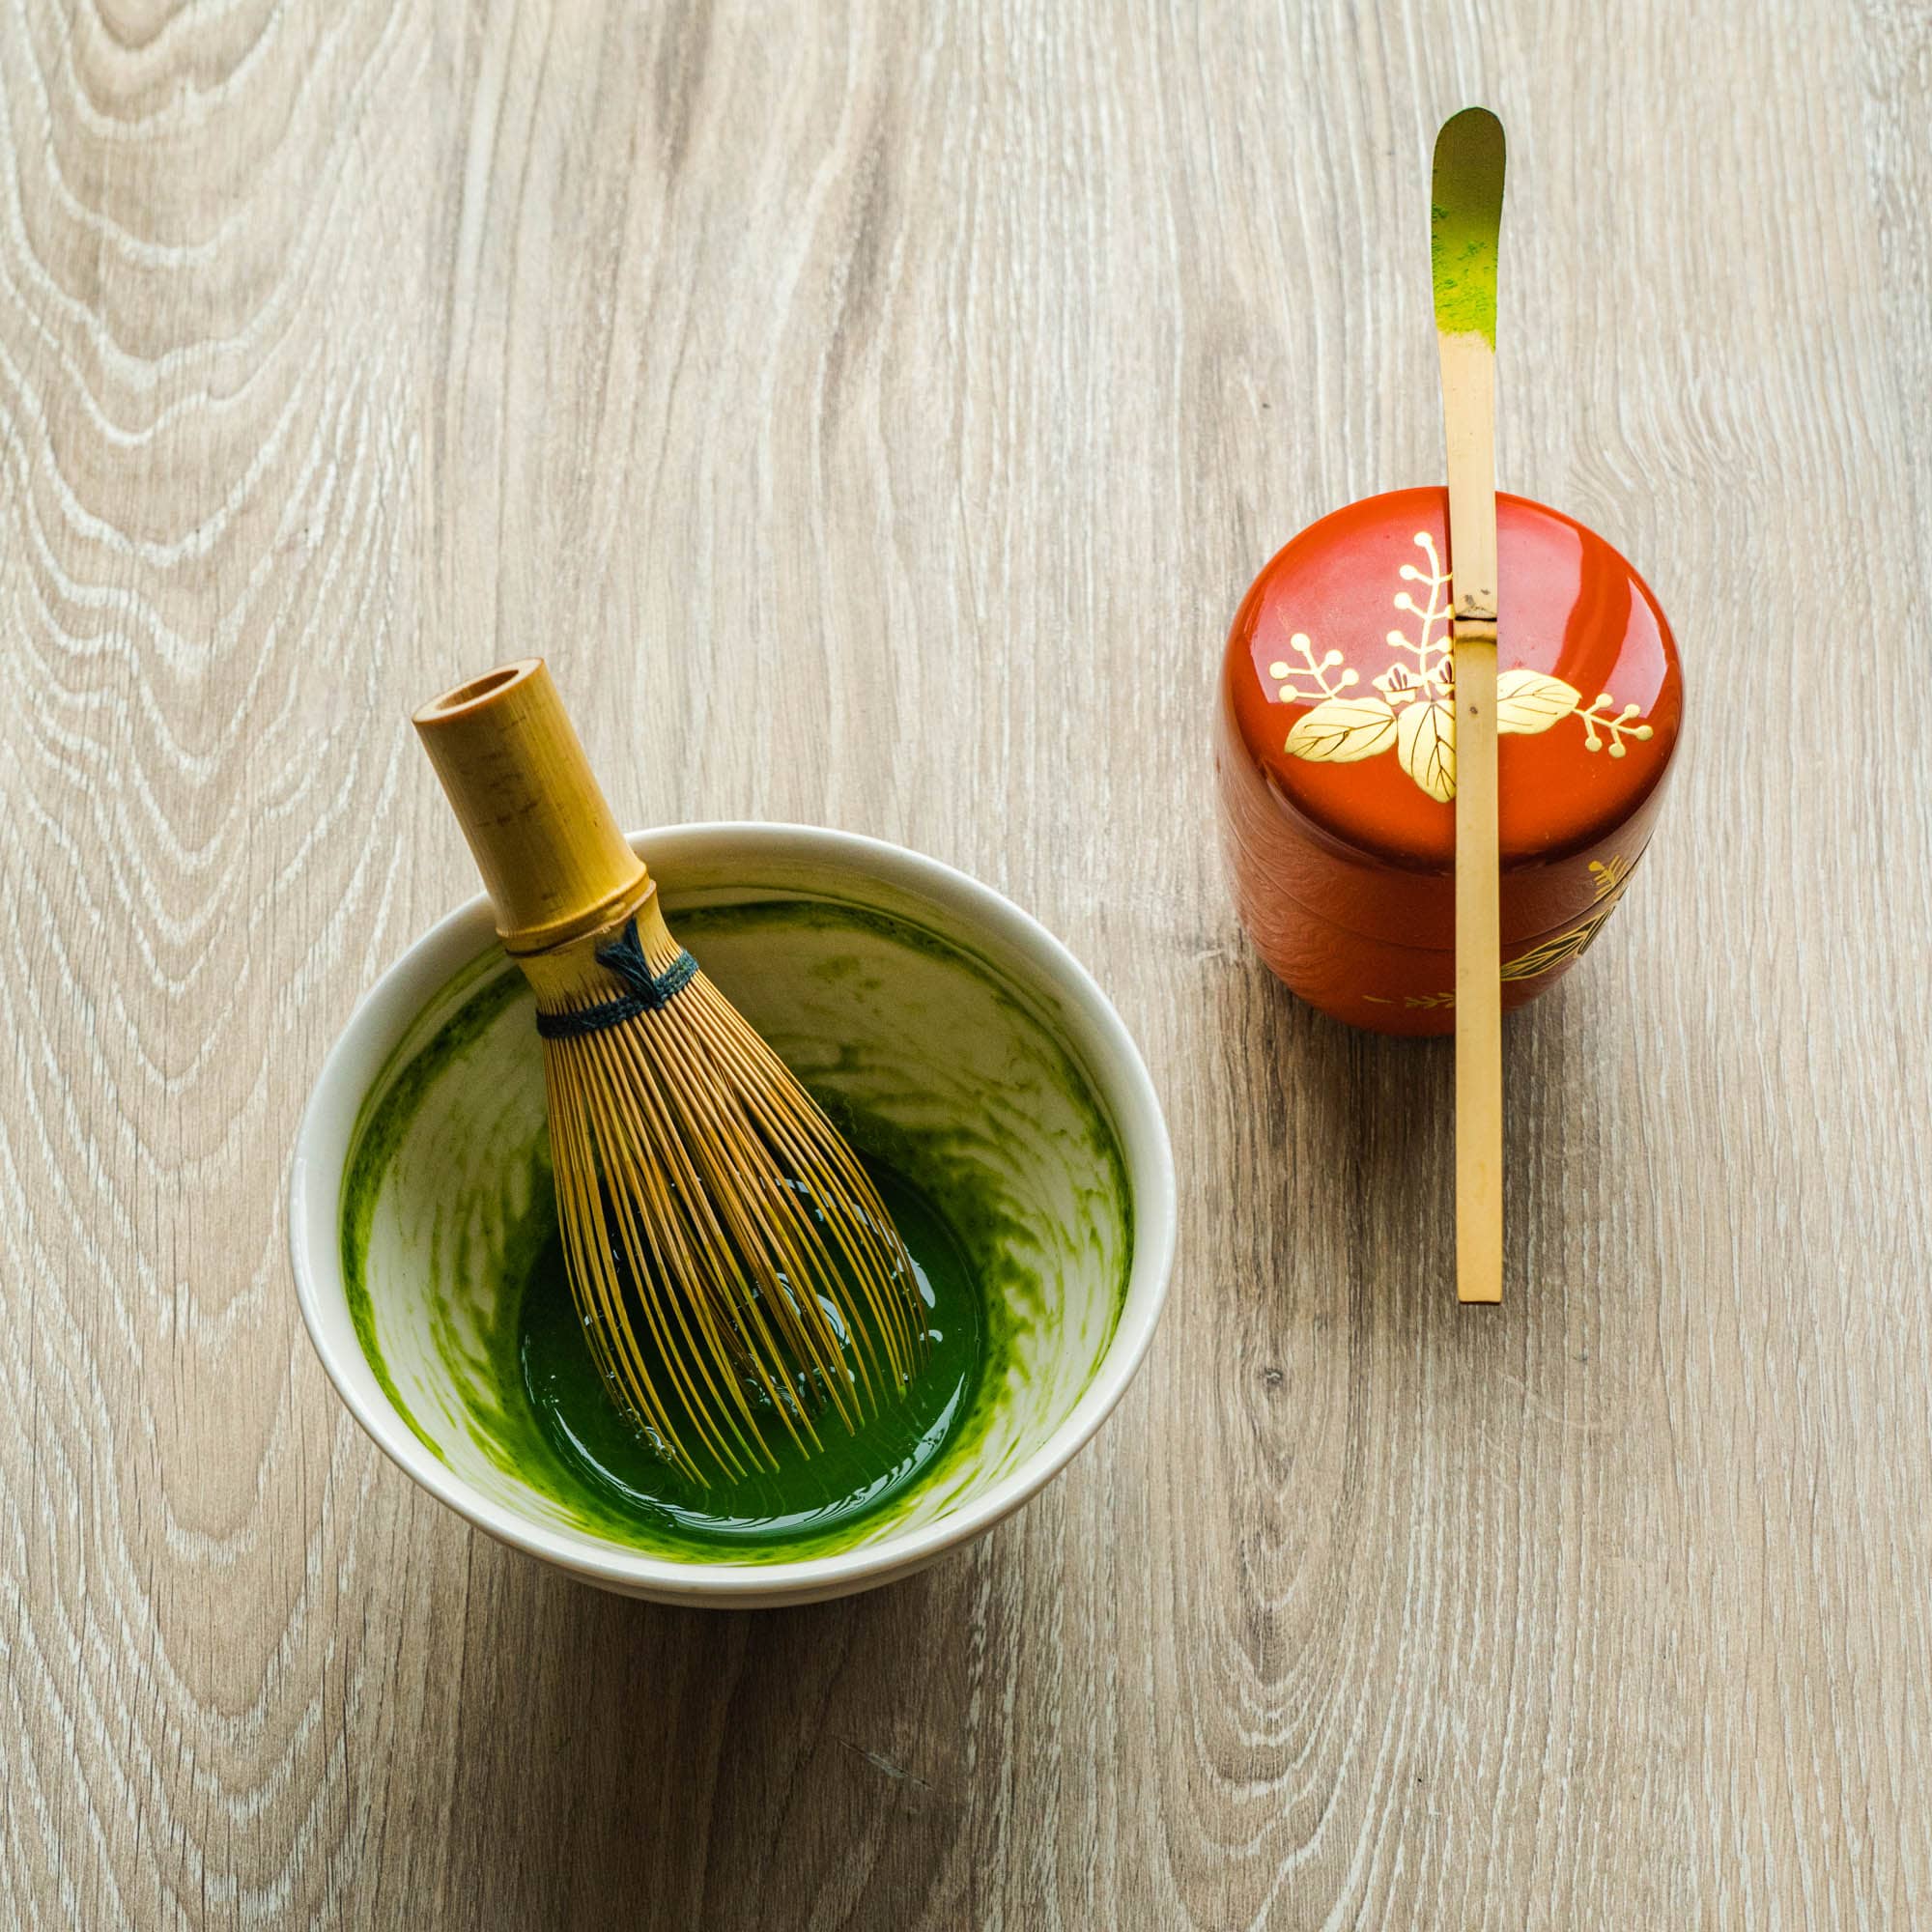 Luxury Matcha Tea set - Japans theeceremonie matcha set - Hug the Tea!